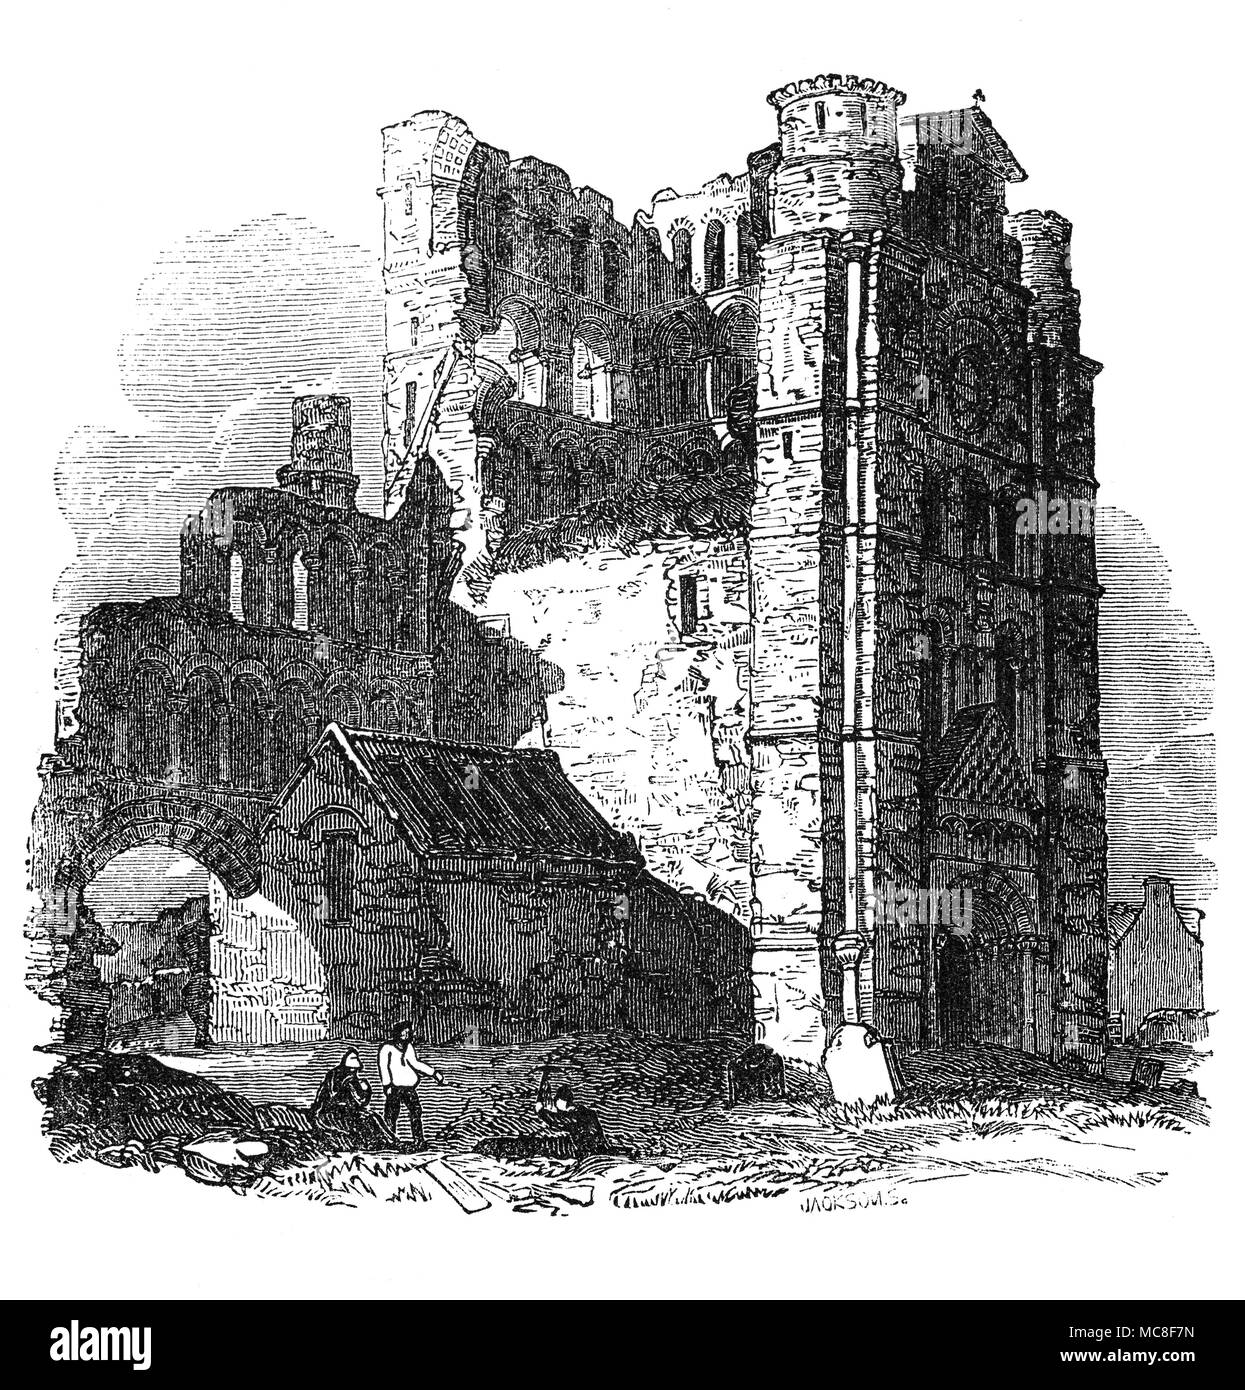 Kelso Abbey è una rovina abbazia scozzese a Kelso, Scozia fondata nel XII secolo da una comunità di monaci Tironensian introdotto per la prima volta in Scozia durante il regno di Alessandro I che occupa il terreno che si affaccia sulla confluenza del Tweed e Teviot acque. Dal 1460 in poi, l'abbazia è cresciuto più costante, ma è venuto ancora una volta sotto attacco nei primi anni del Cinquecento quando ha cessato di funzionare a causa di dis monastico-stabilimento sotto la riforma scozzese, dal momento che la comunità Tironensian a Kelso non era più riconosciuto ufficialmente. Foto Stock